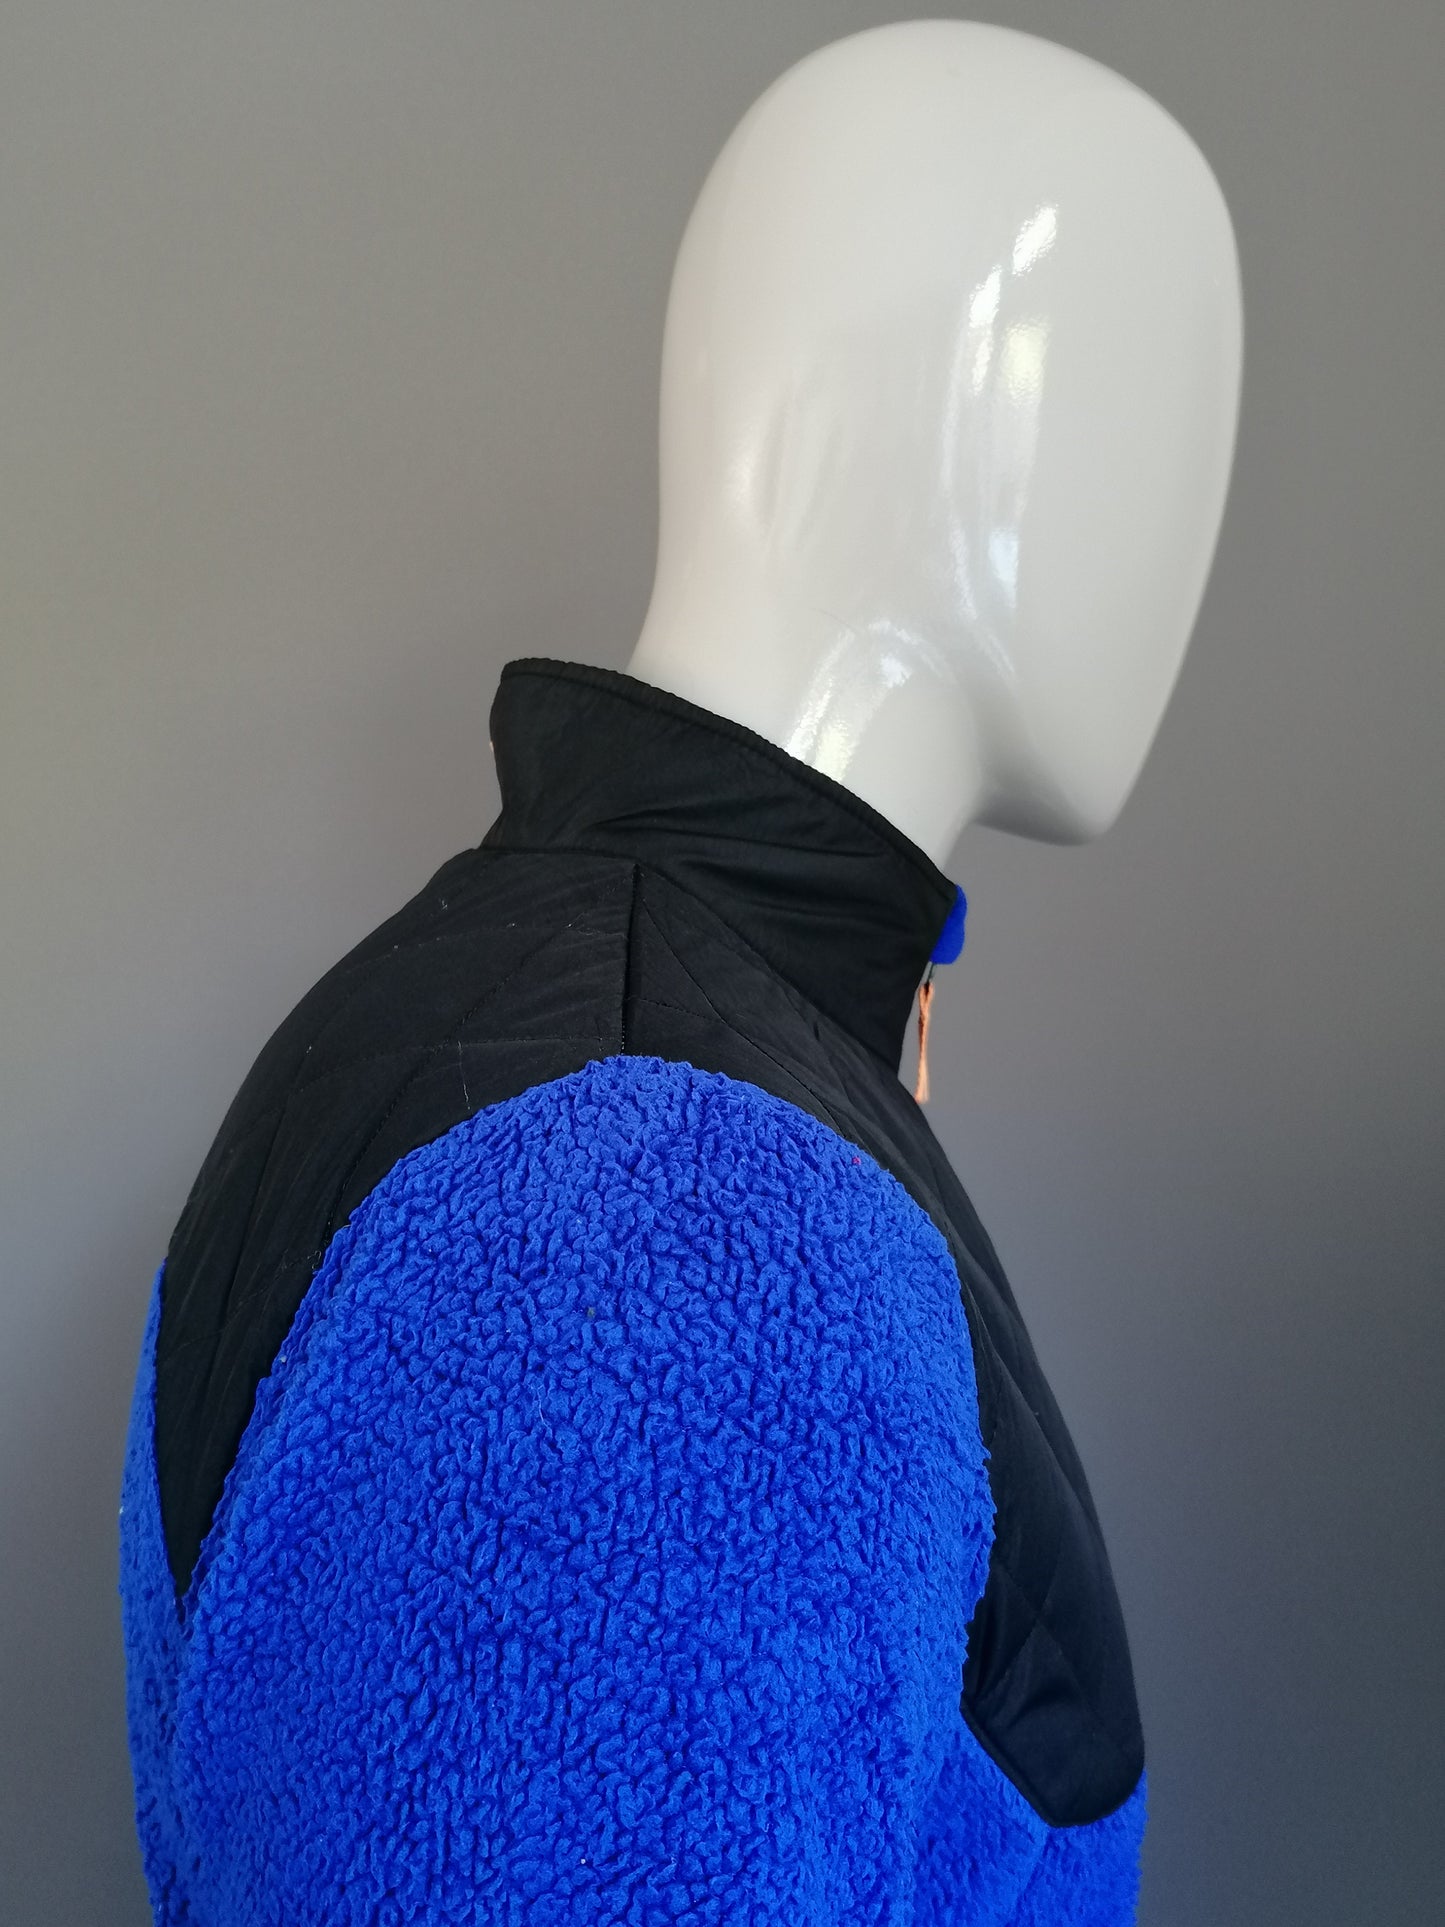 Champion C9 Fleece Vest. Blauw gekleurd. Maat XL-Jeugd / S.